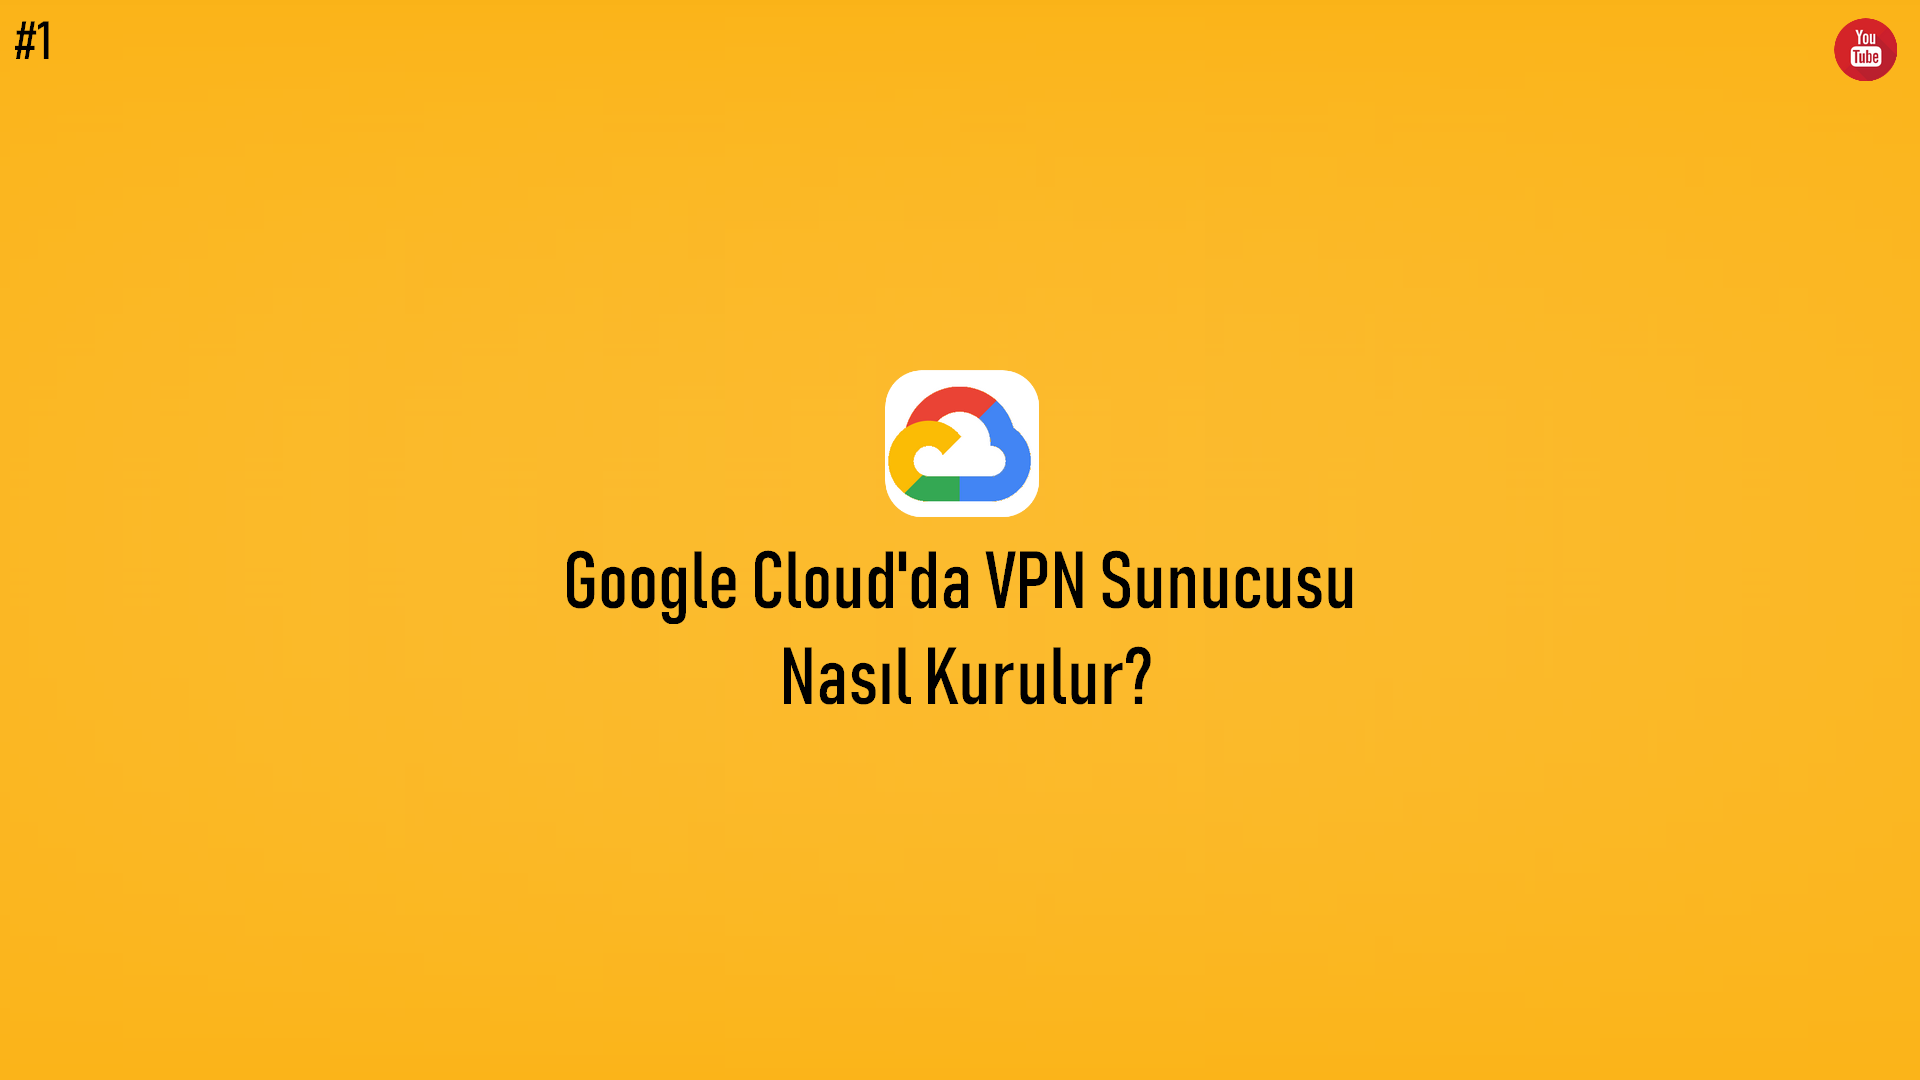 Google Cloud'da VPN Sunucusu Nasıl Kurulur? (Video İçerik) başlıklı içeriğin resmi